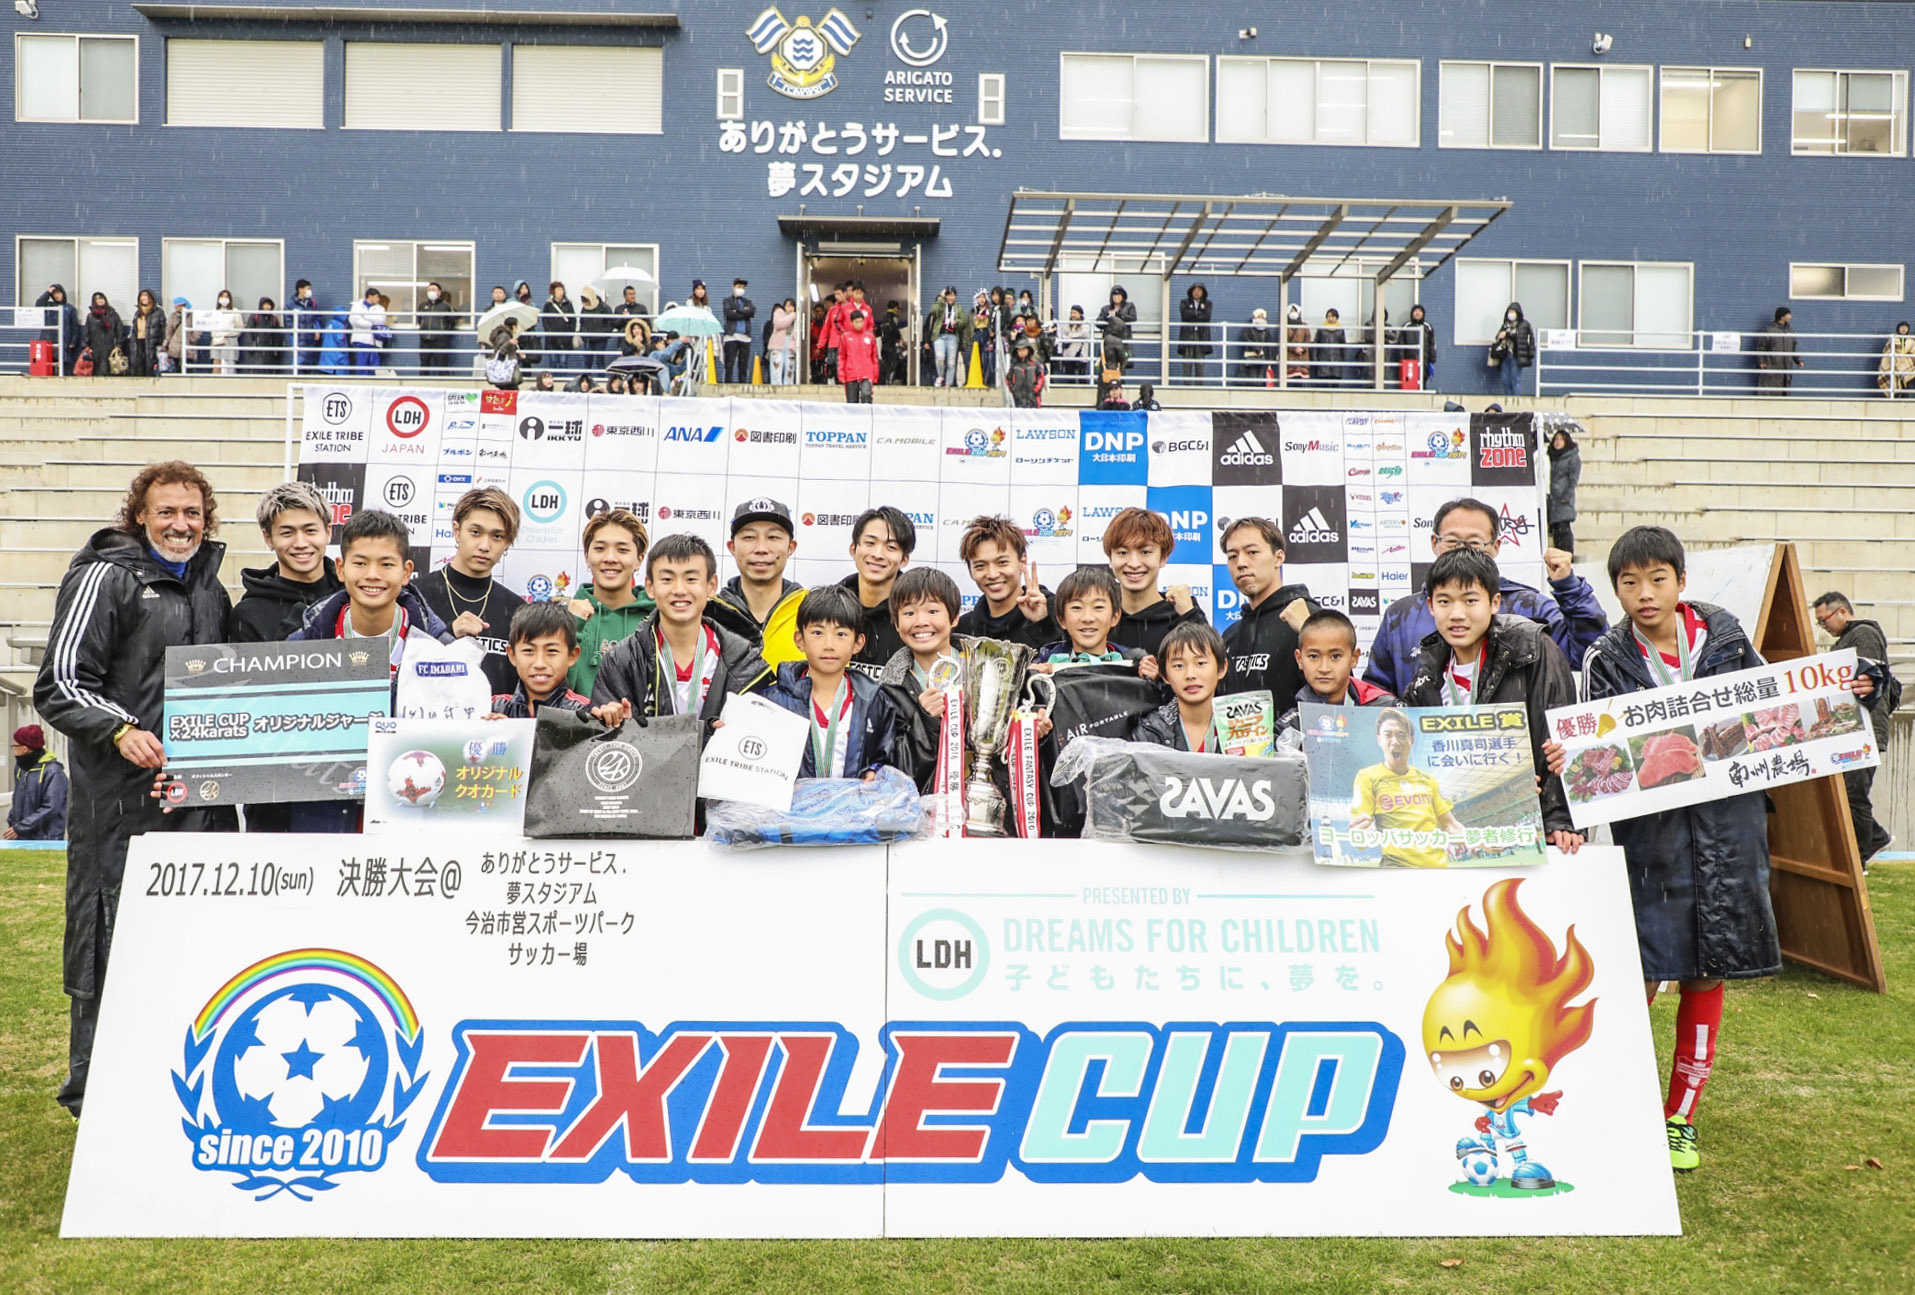 画像 Exile Usa 世界 佐藤大樹率いるfantasticsがサッカー少年たちを激励 Exile Cup17 優勝チームに欧州 サッカー 武者修行 を贈呈 の画像3 6 Spice エンタメ特化型情報メディア スパイス